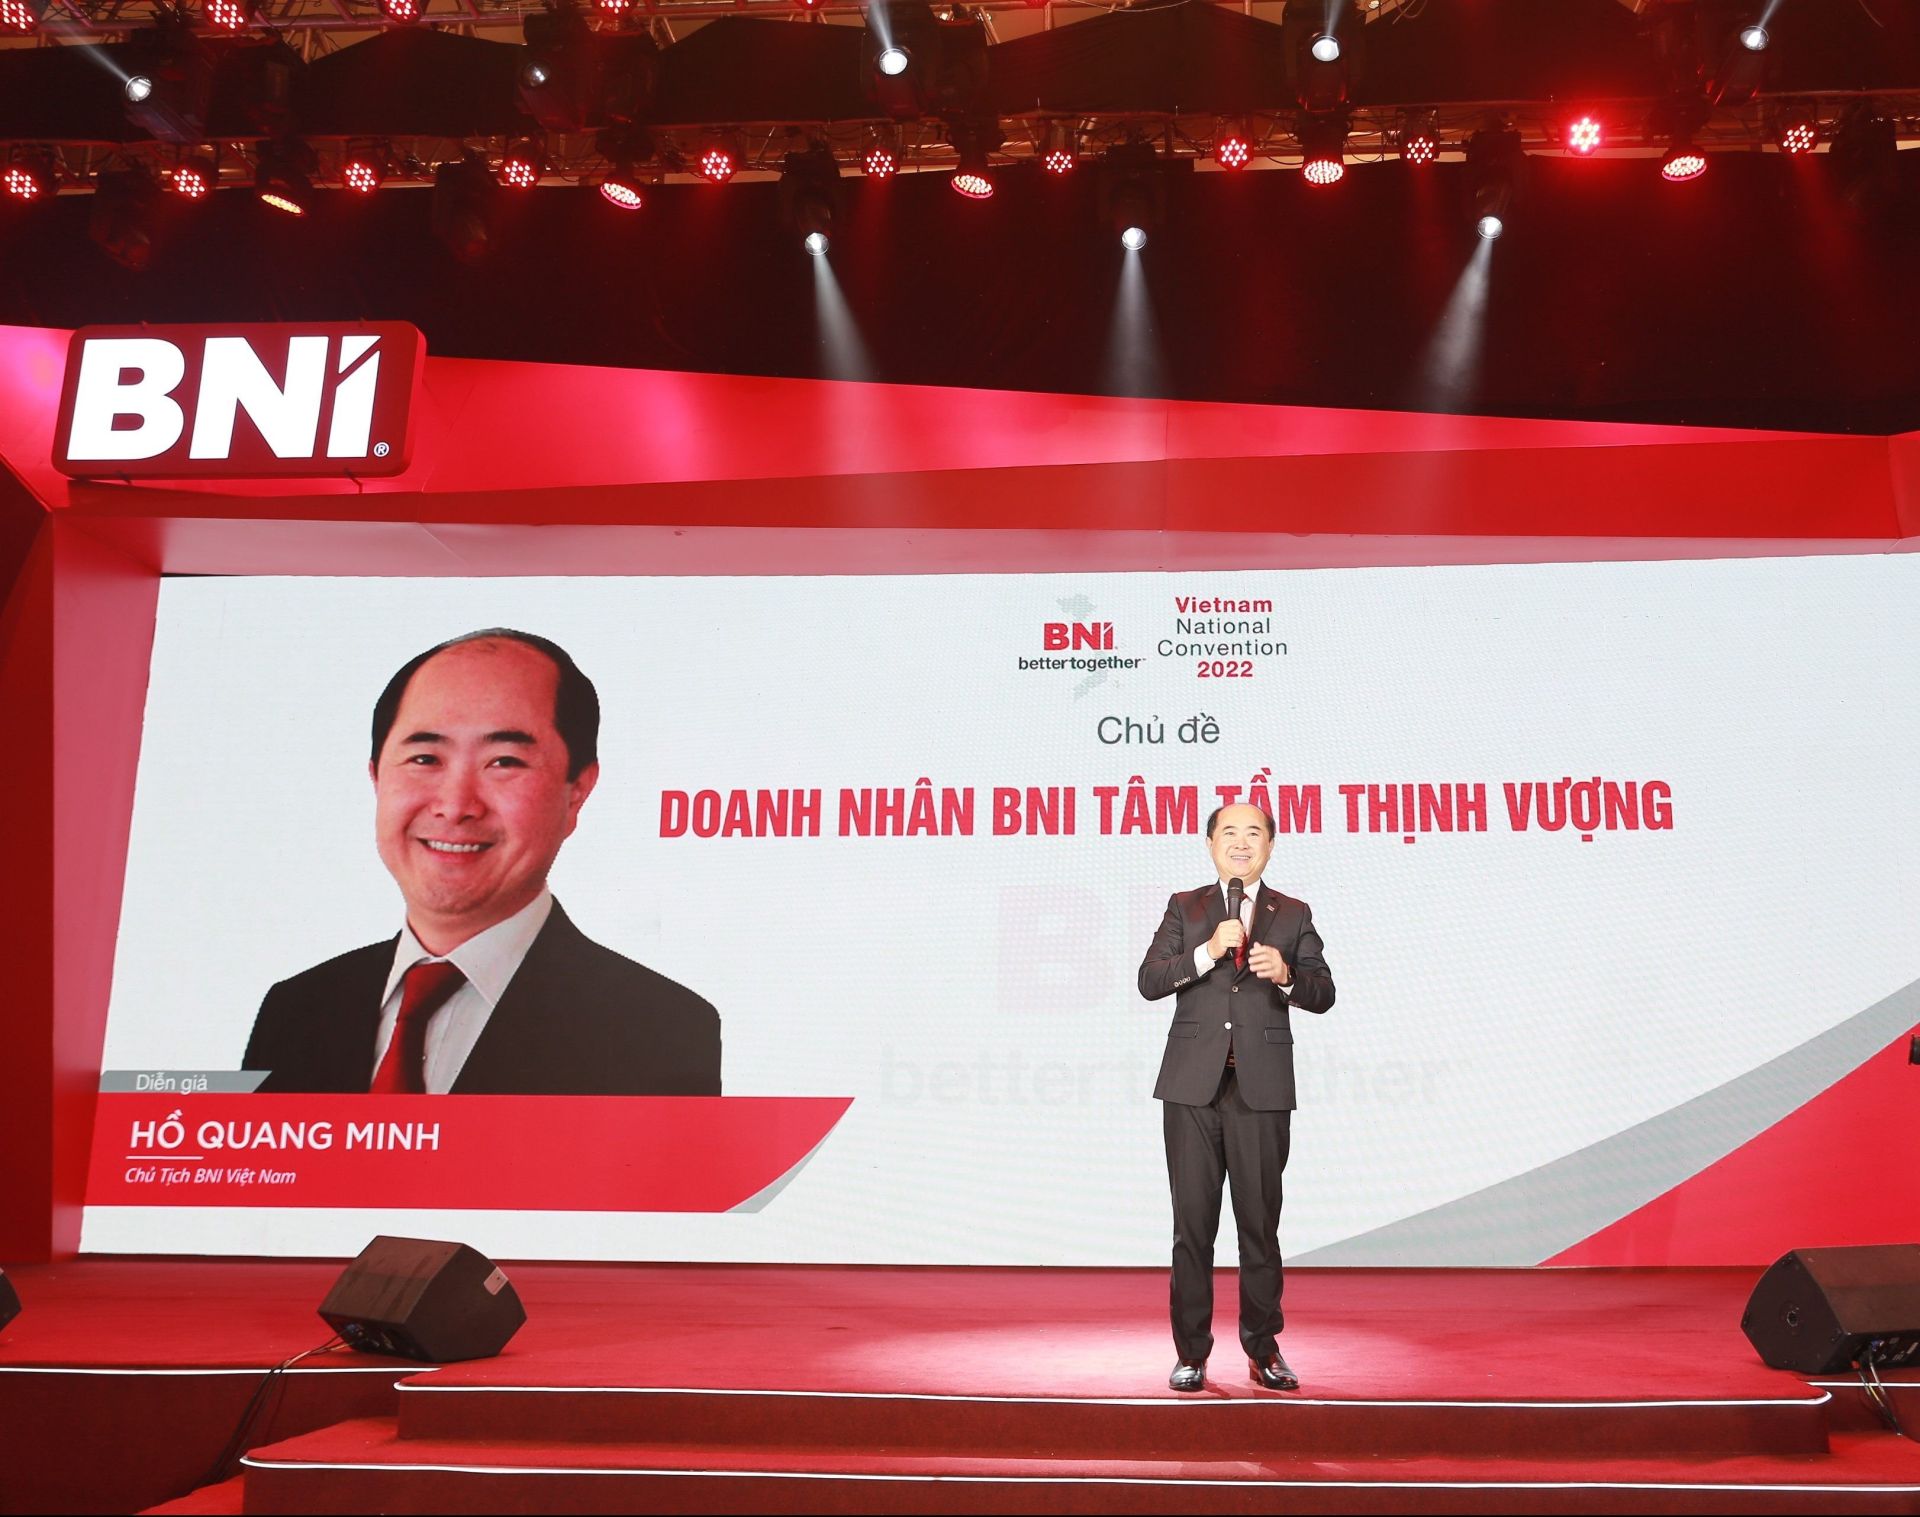 Tại sự kiện Hội ngộ đỉnh cao 2023, Chủ tịch BNI Việt Nam - Ông Hồ Quang Minh sẽ chính thức tuyên bố khai mạc chiến lược 